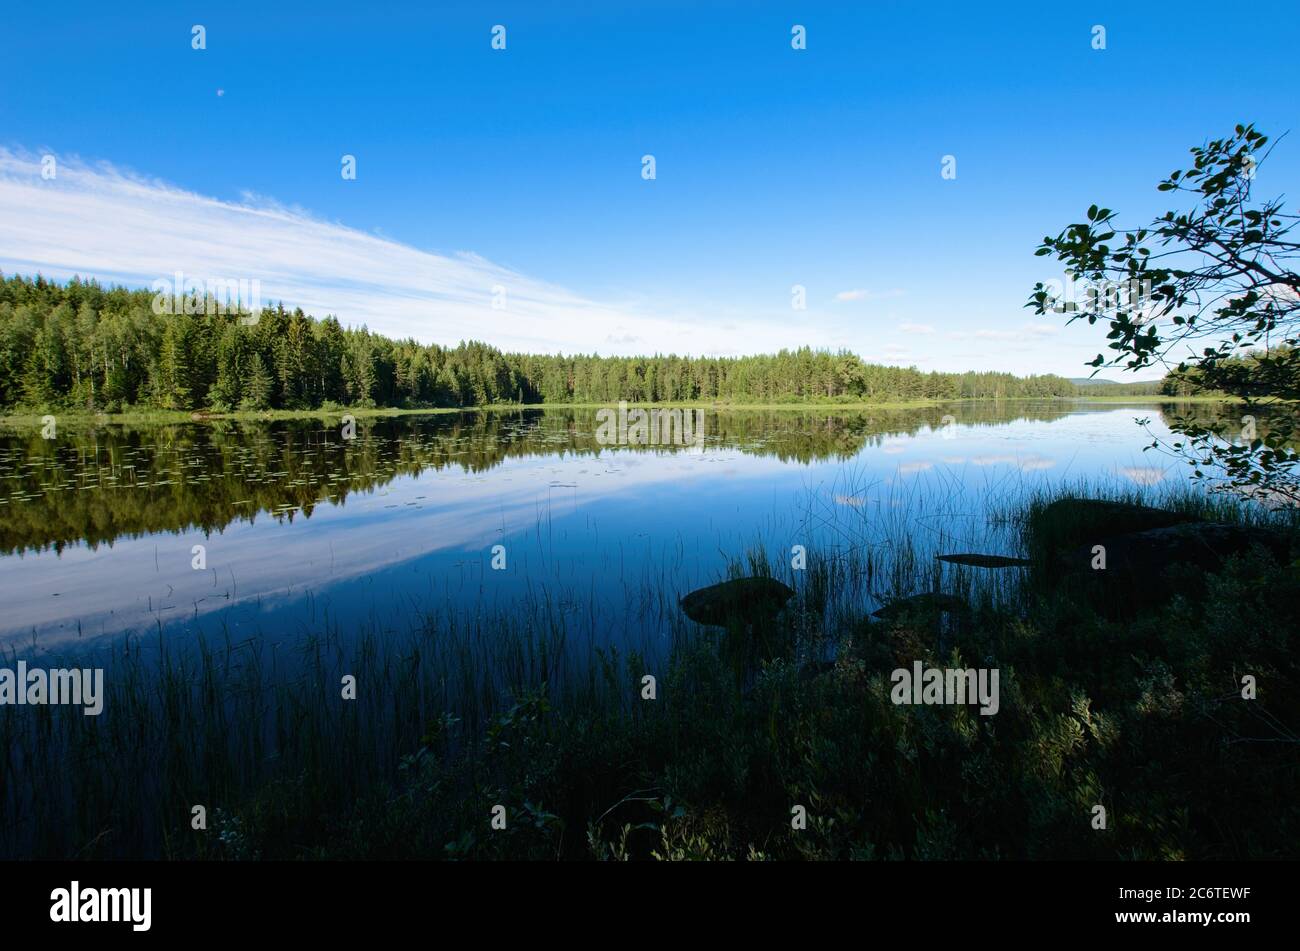 Wunderschöne Landschaften mit ruhigen Seen und Wäldern in Dalarna, Schweden. Stockfoto